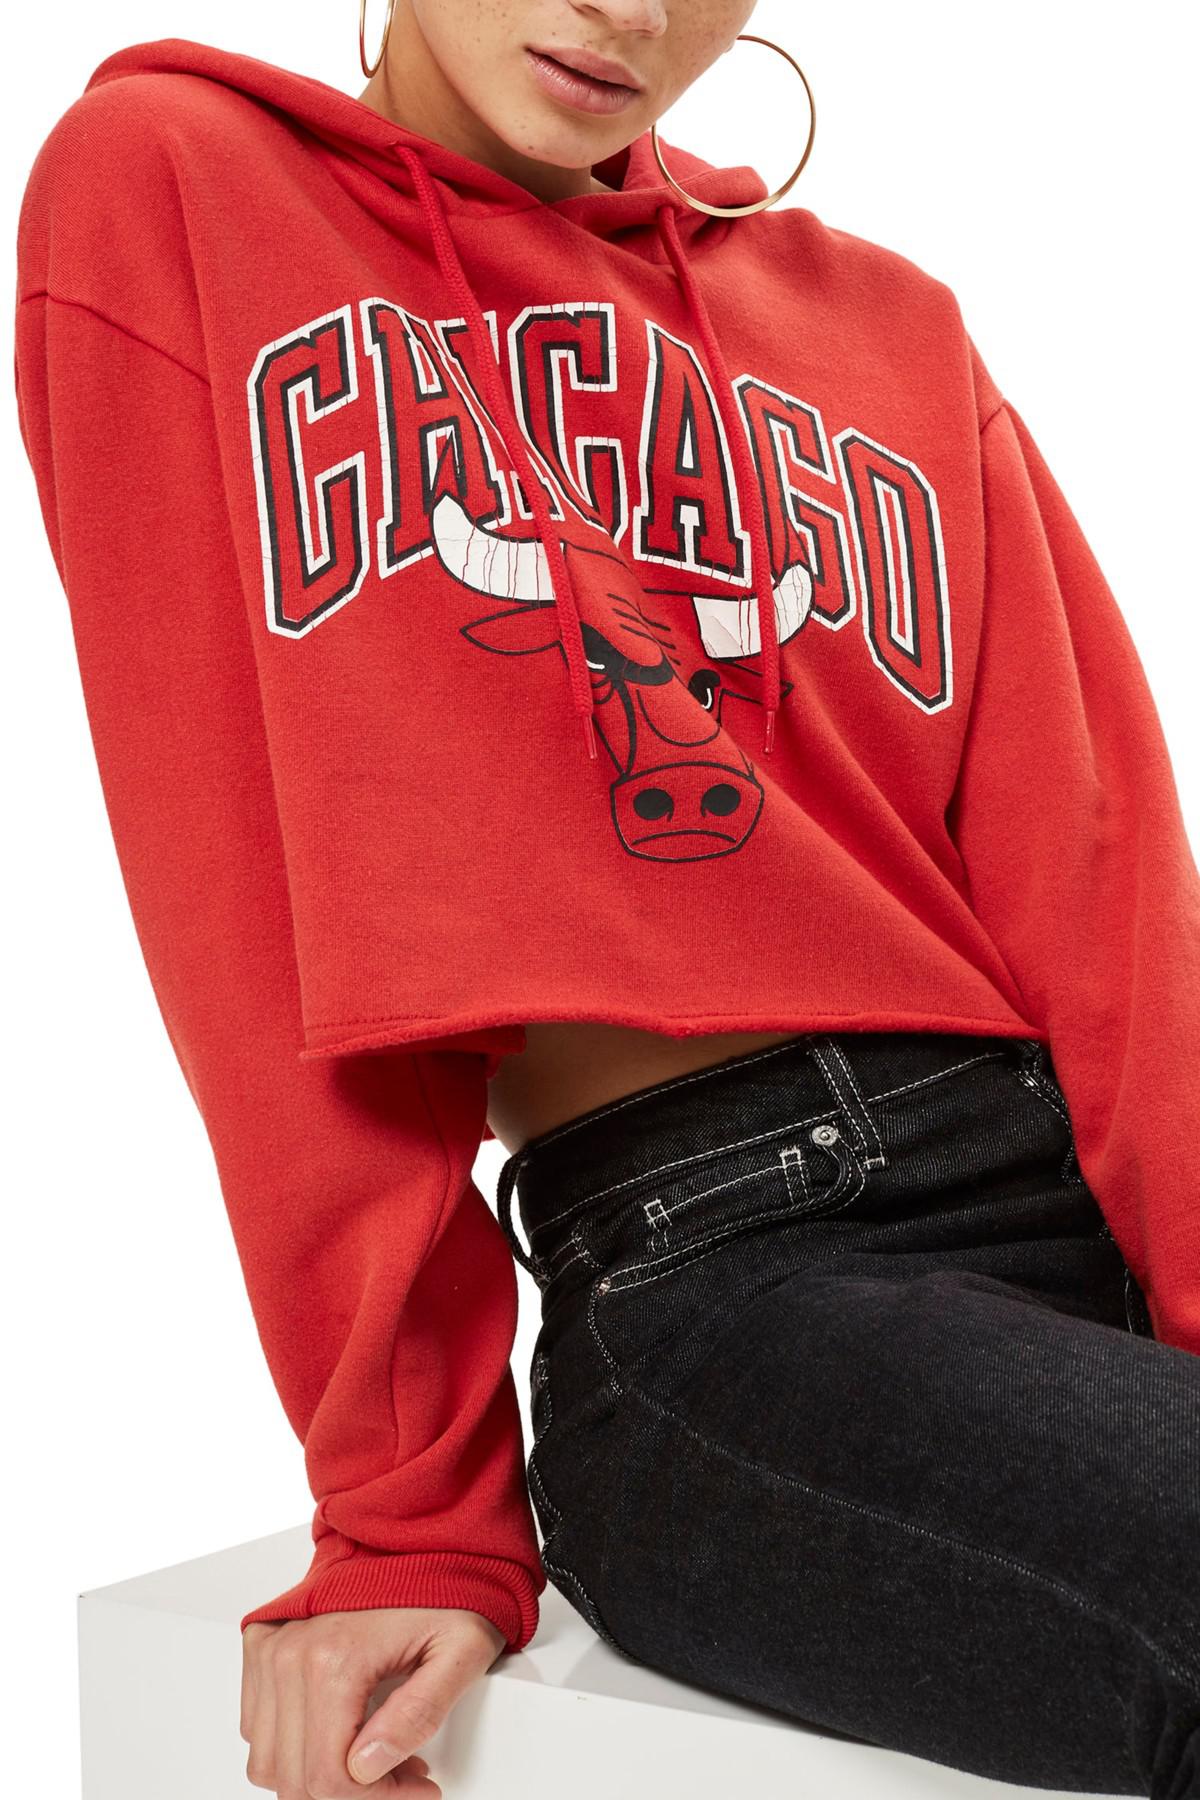 Red WOMAN Crop Top Chicago Bulls Licensed Sweatshirt 2713913